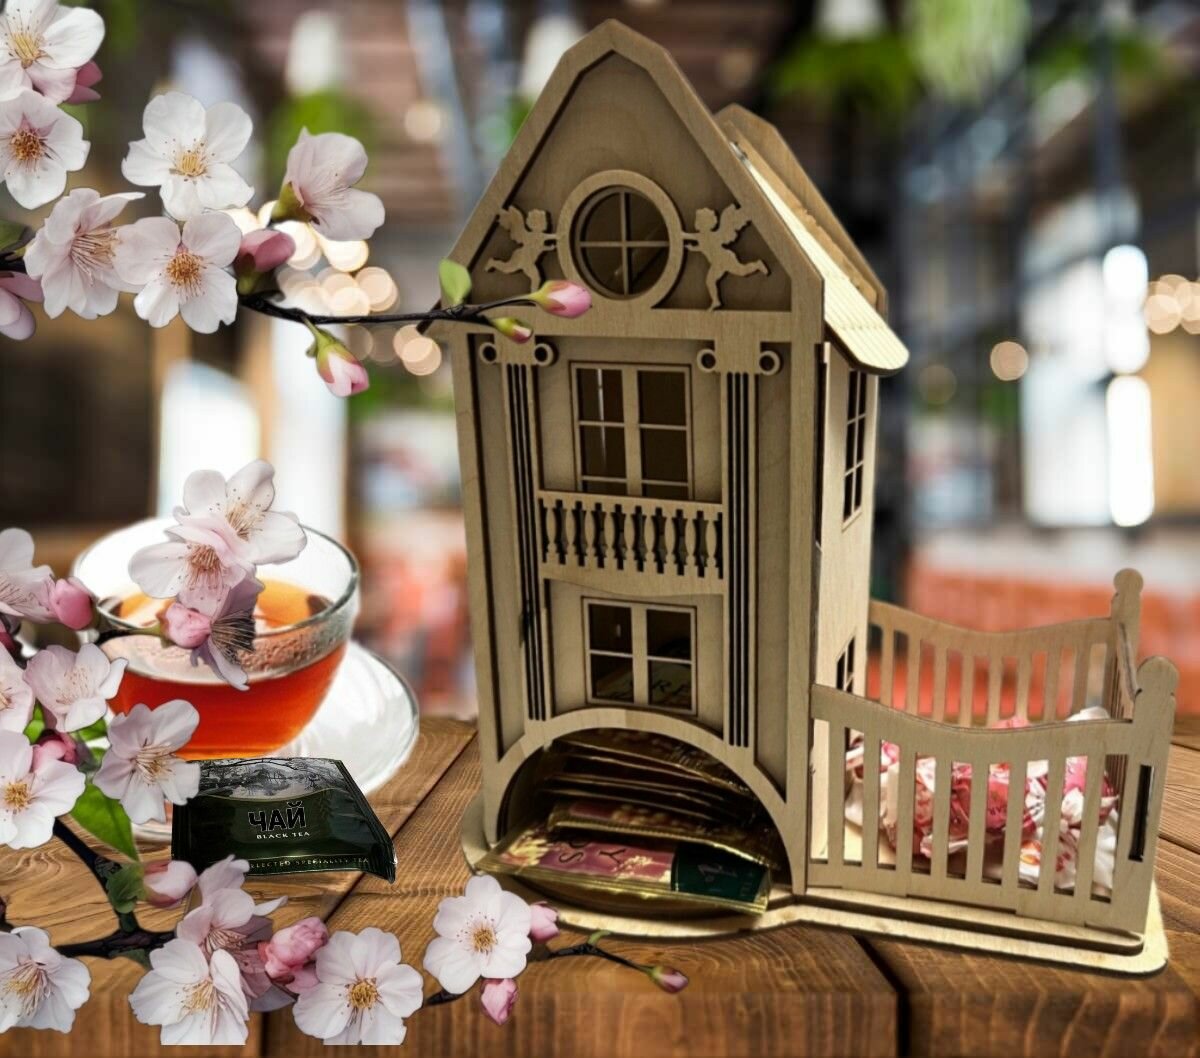 Чайный домик "Домик с двориком ". Комплект заготовок из фанеры для самостоятельной сборки и декорирования.